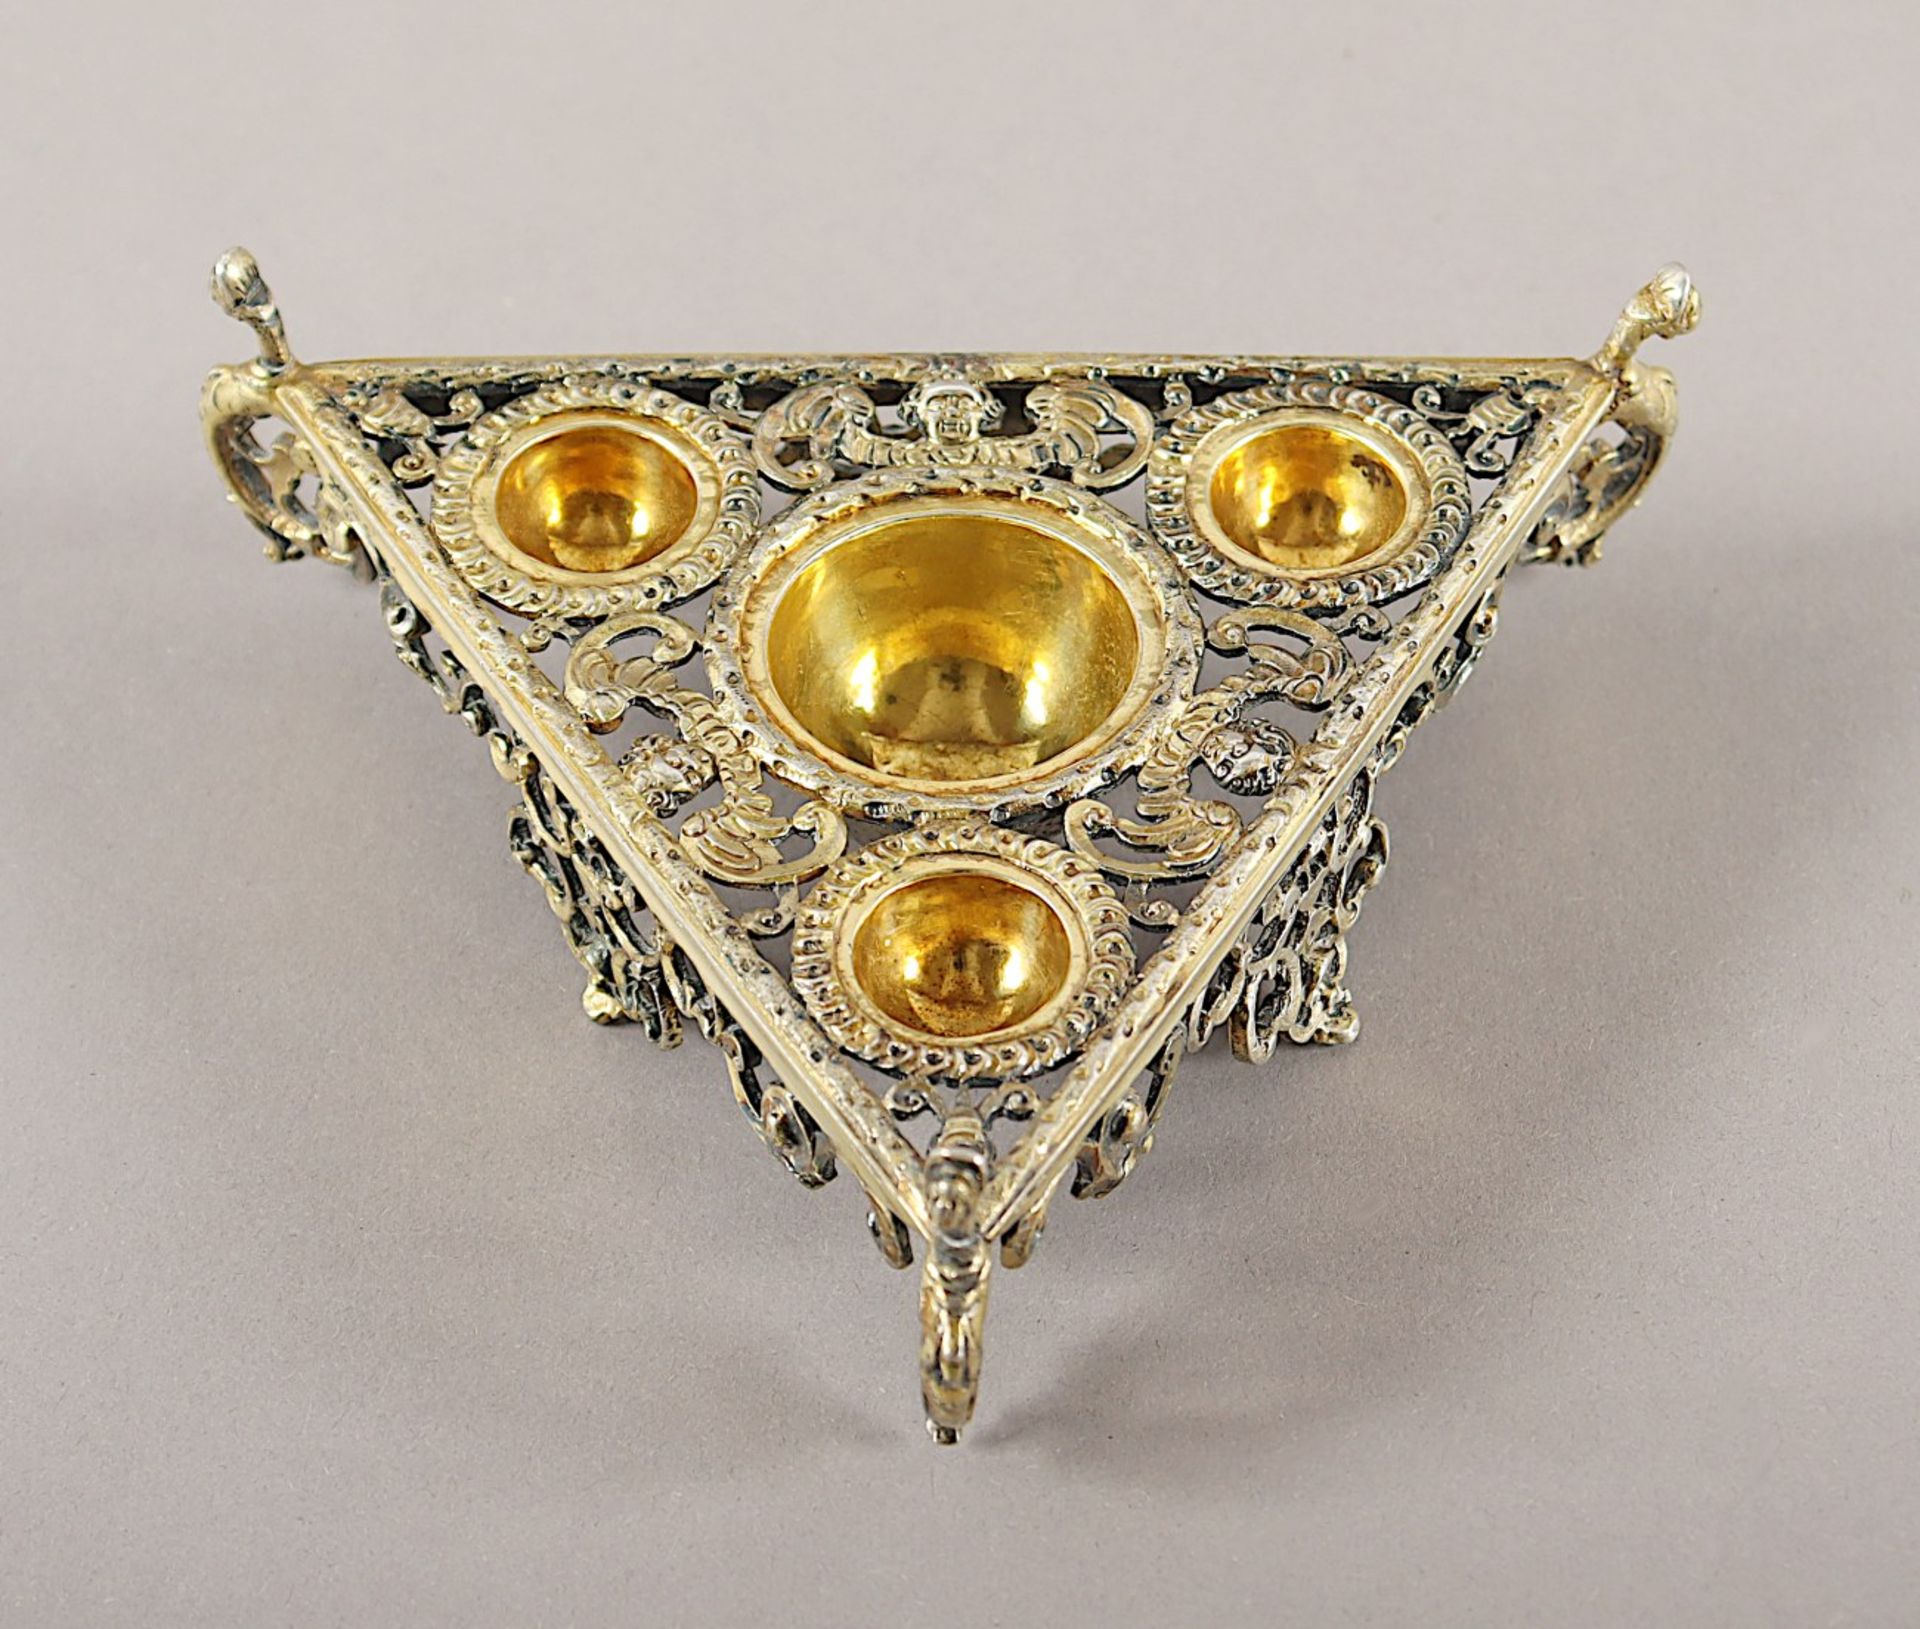 GEWÜRZSCHALE, Silber geprüft, partiell vergoldet, im Renaissance-Stil, L 14, 157g, undeutliche Mark